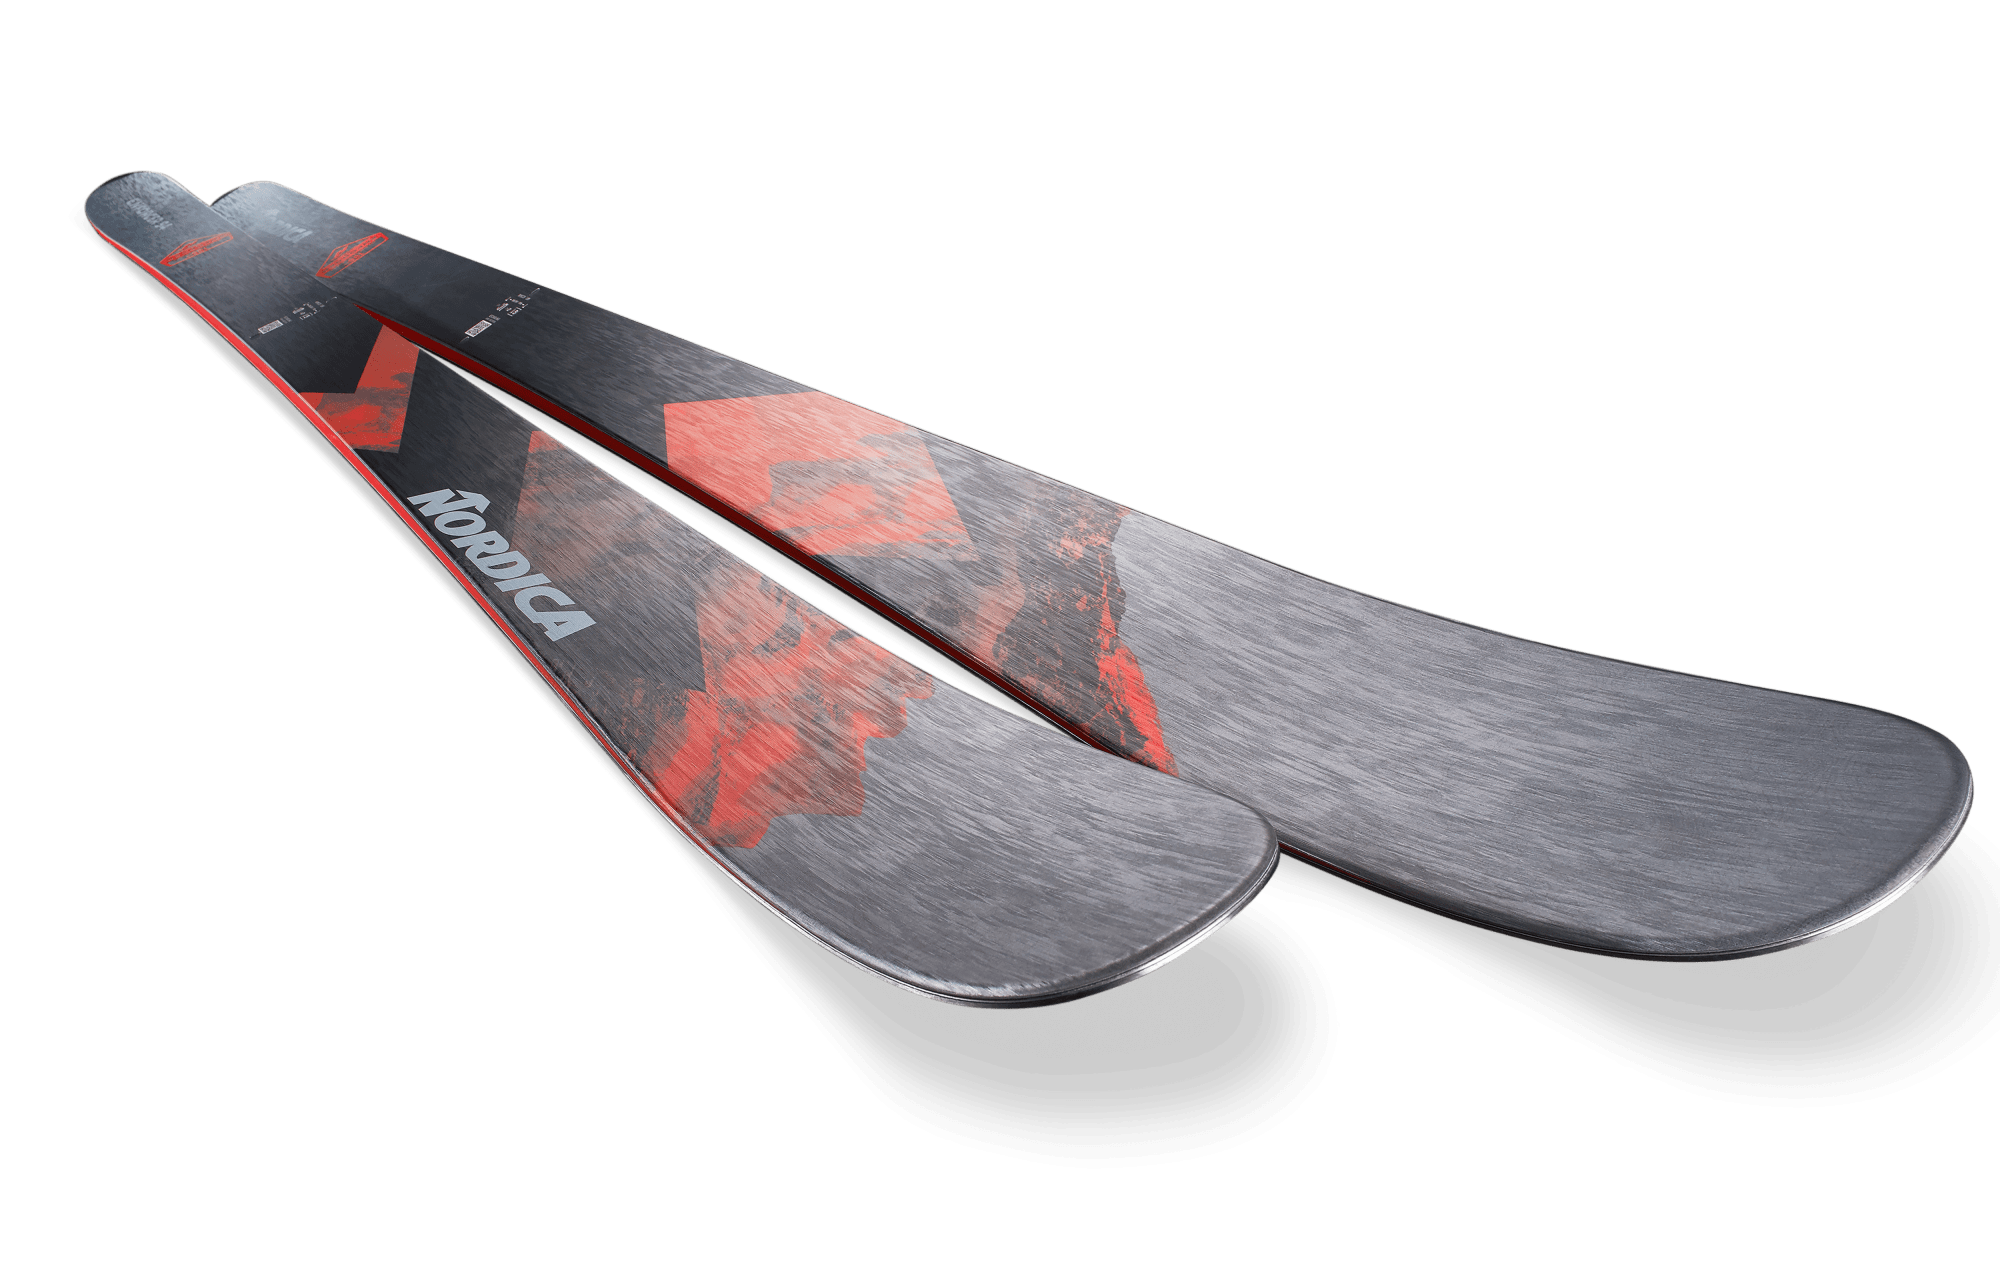 Nordica Enforcer 94 Skis · 2023